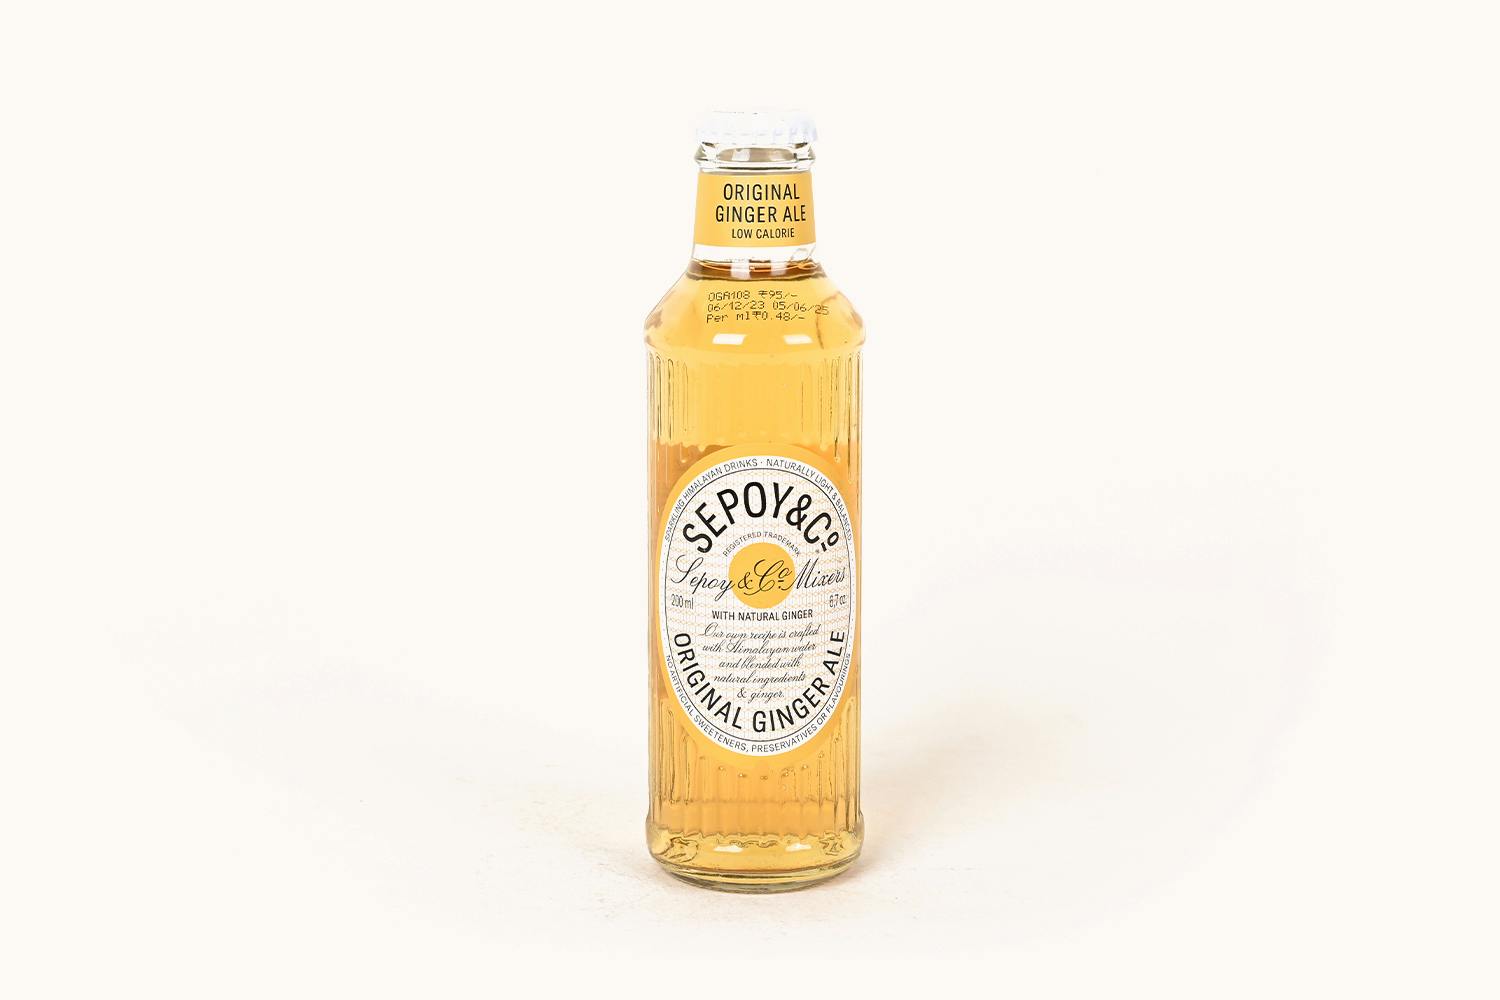 Sepoy & Co. Original Ginger Ale